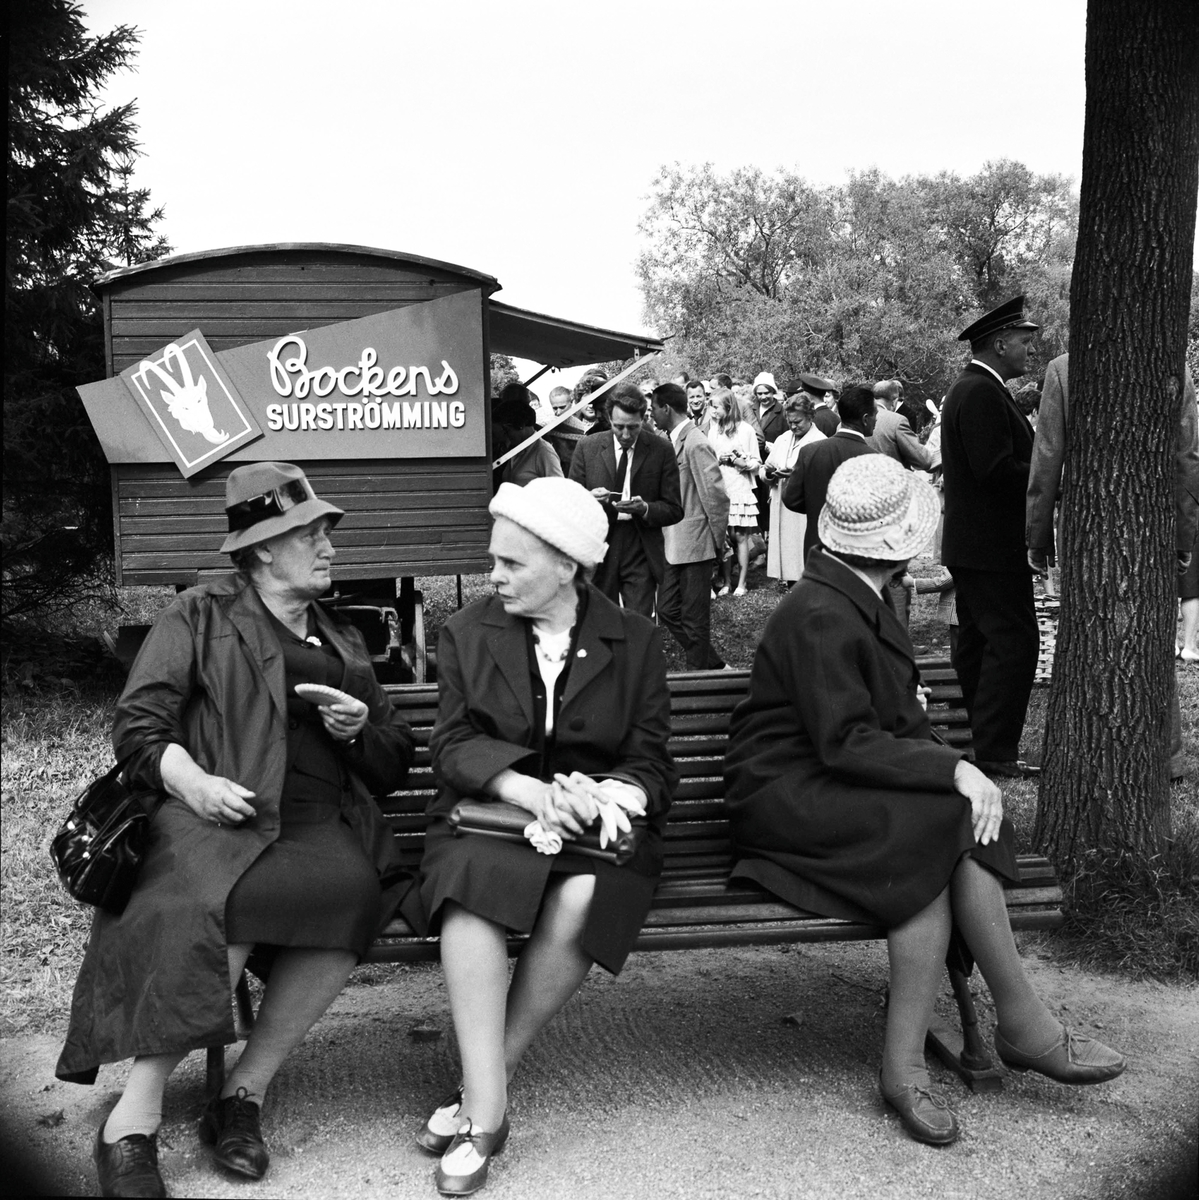 Tre kvinnor på en bänk på Skansen. I bakgrunden marknadsvagn "Bockens surströmming".
"Fest på fisk" den 28 augusti 1966.